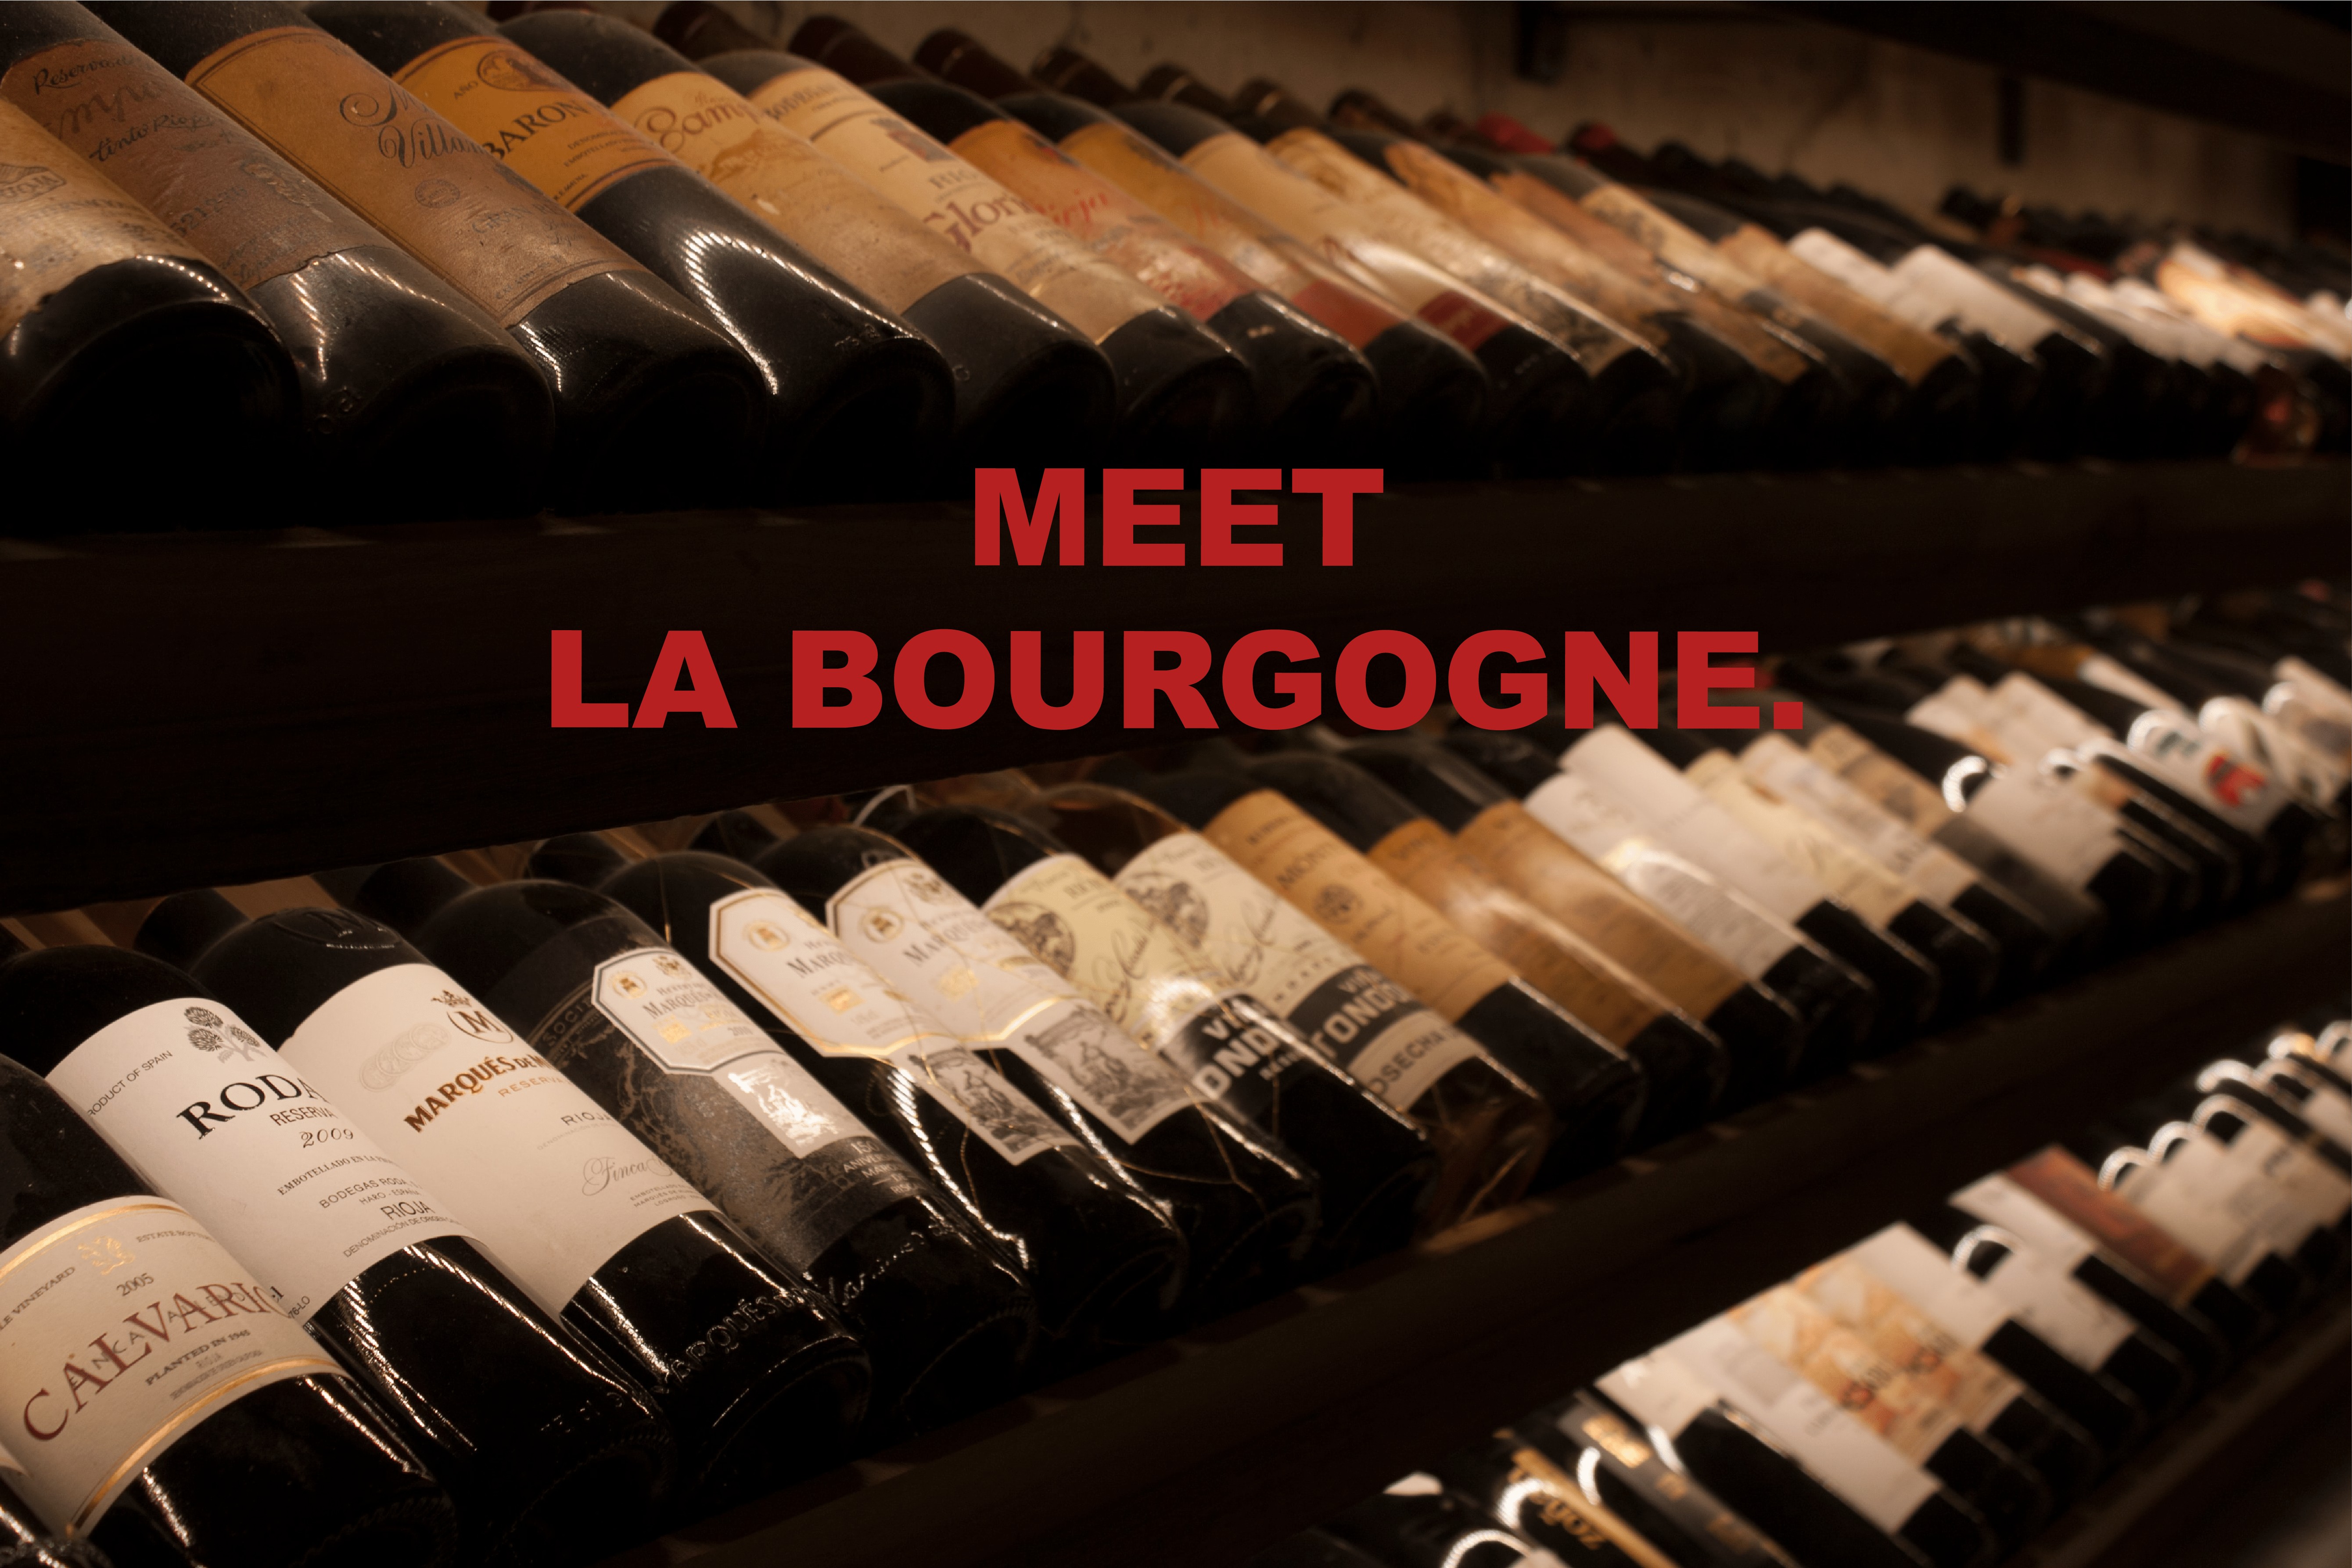 Meet La Bourgogne - The Refined Spirit